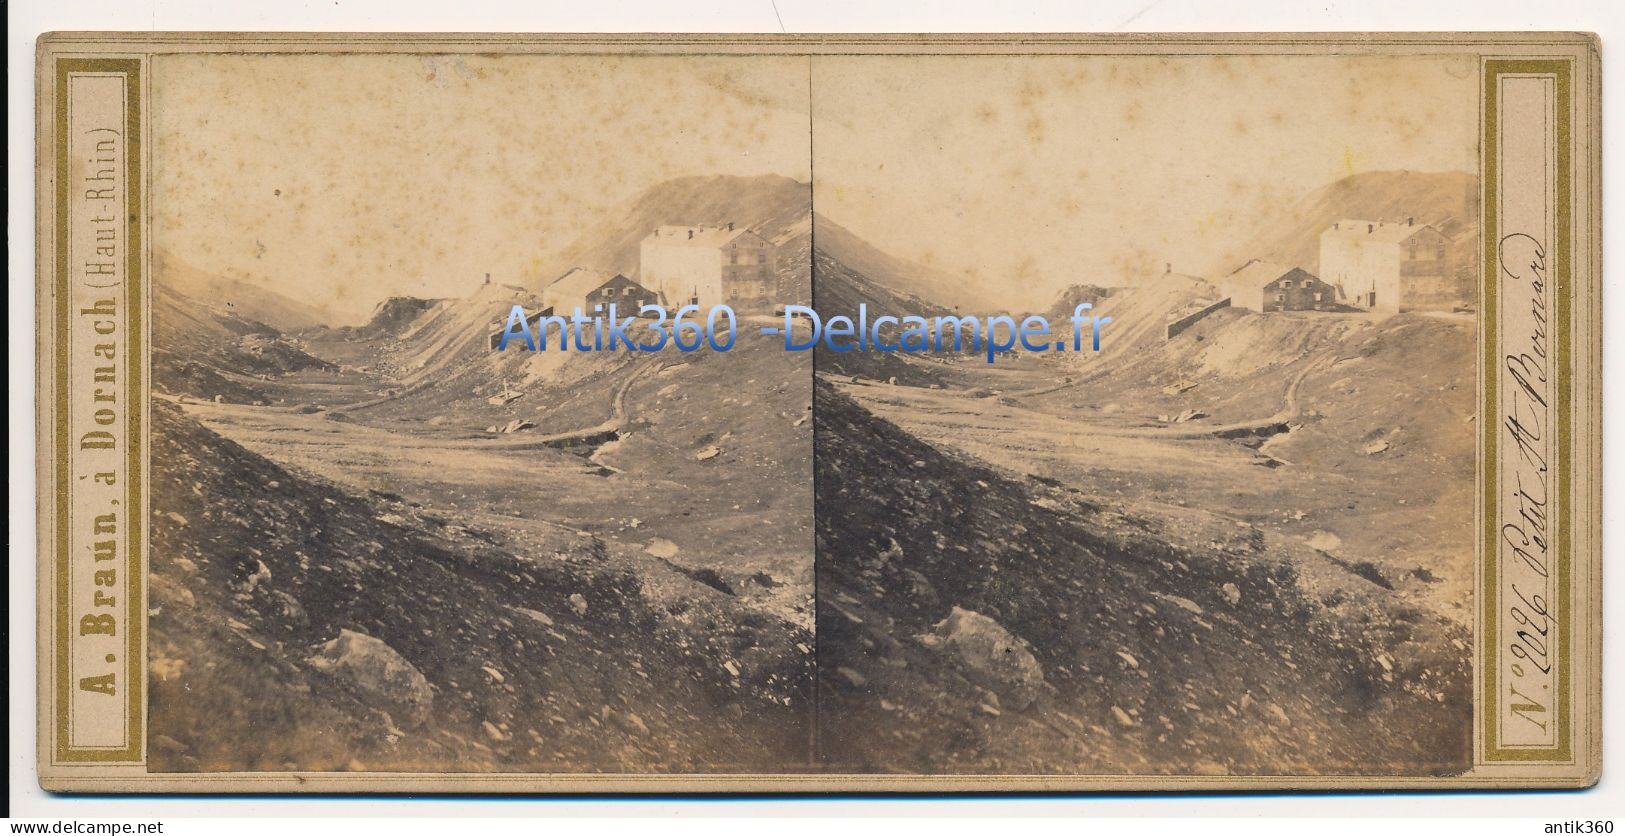 Photographie Ancienne Vue Stéréoscopique Circa 1860 Suisse Isère Vue Du Petit Saint Bernard Photographe Adolphe BRAUN - Stereoscoop